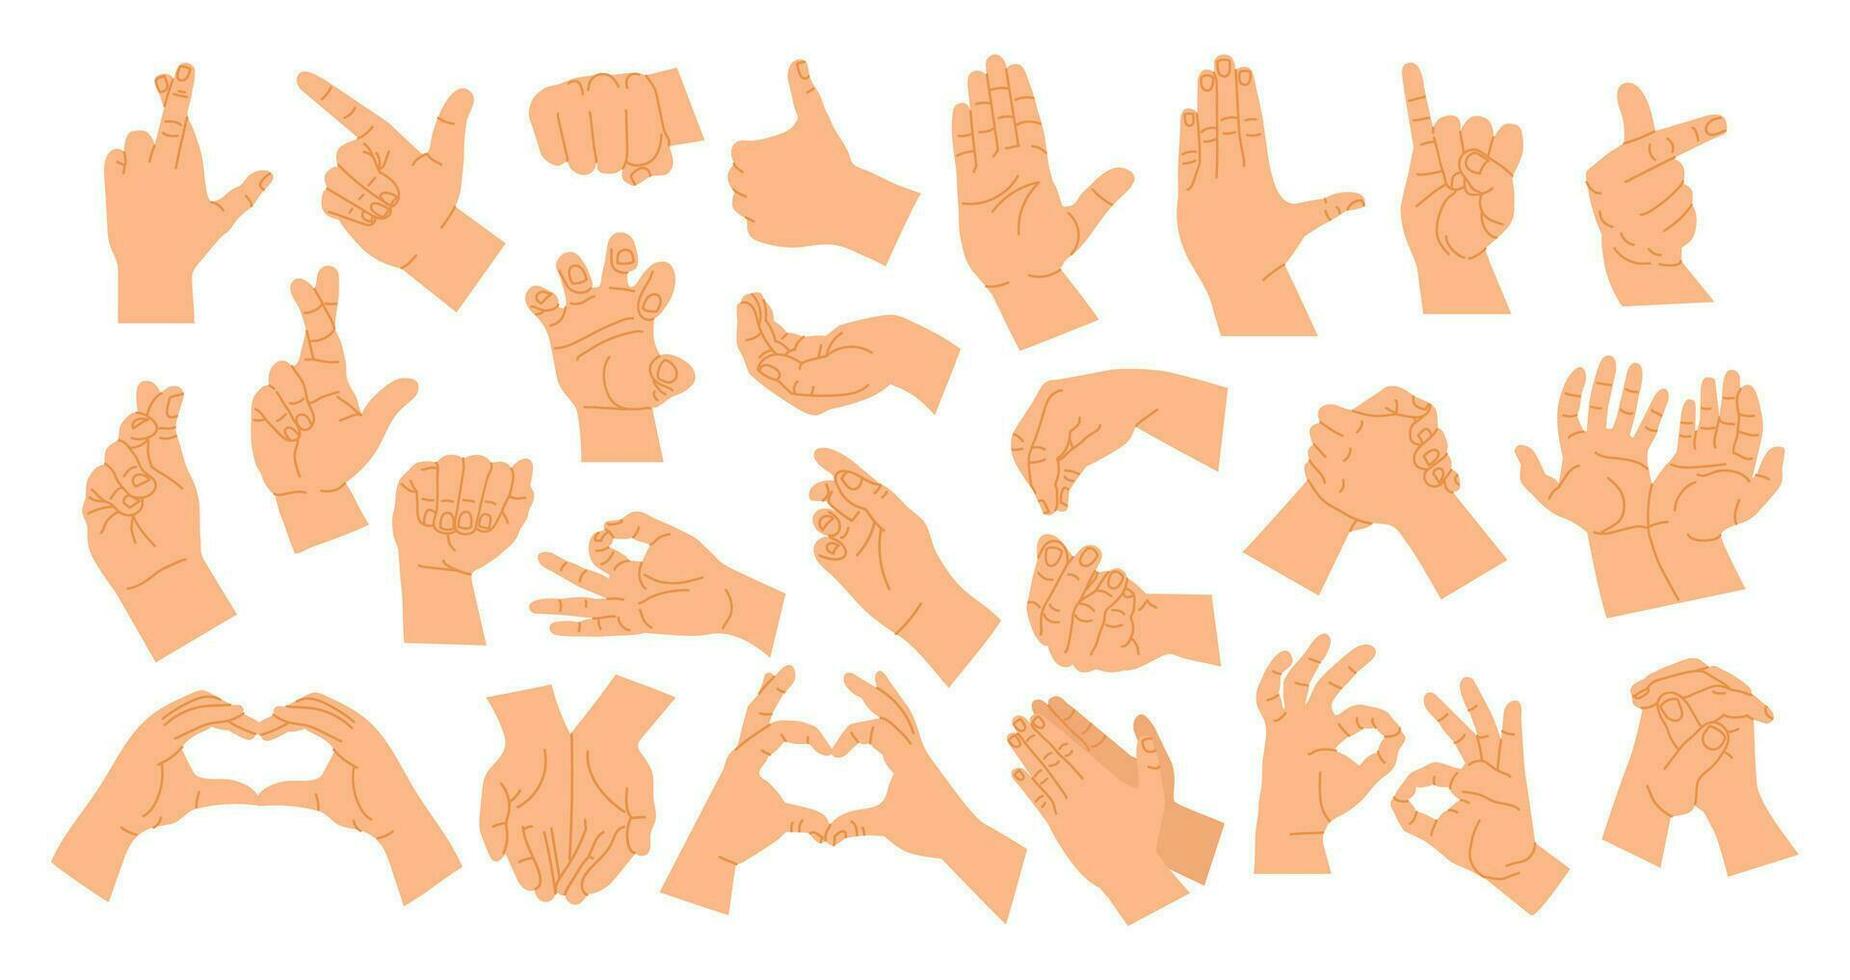 mano gestos posa dibujos animados humano manos demostración diferente señales. dedos y palma gesto. demostración posición detener, corazón, puño, actitud con dedo índice, varios brazo vector ilustración